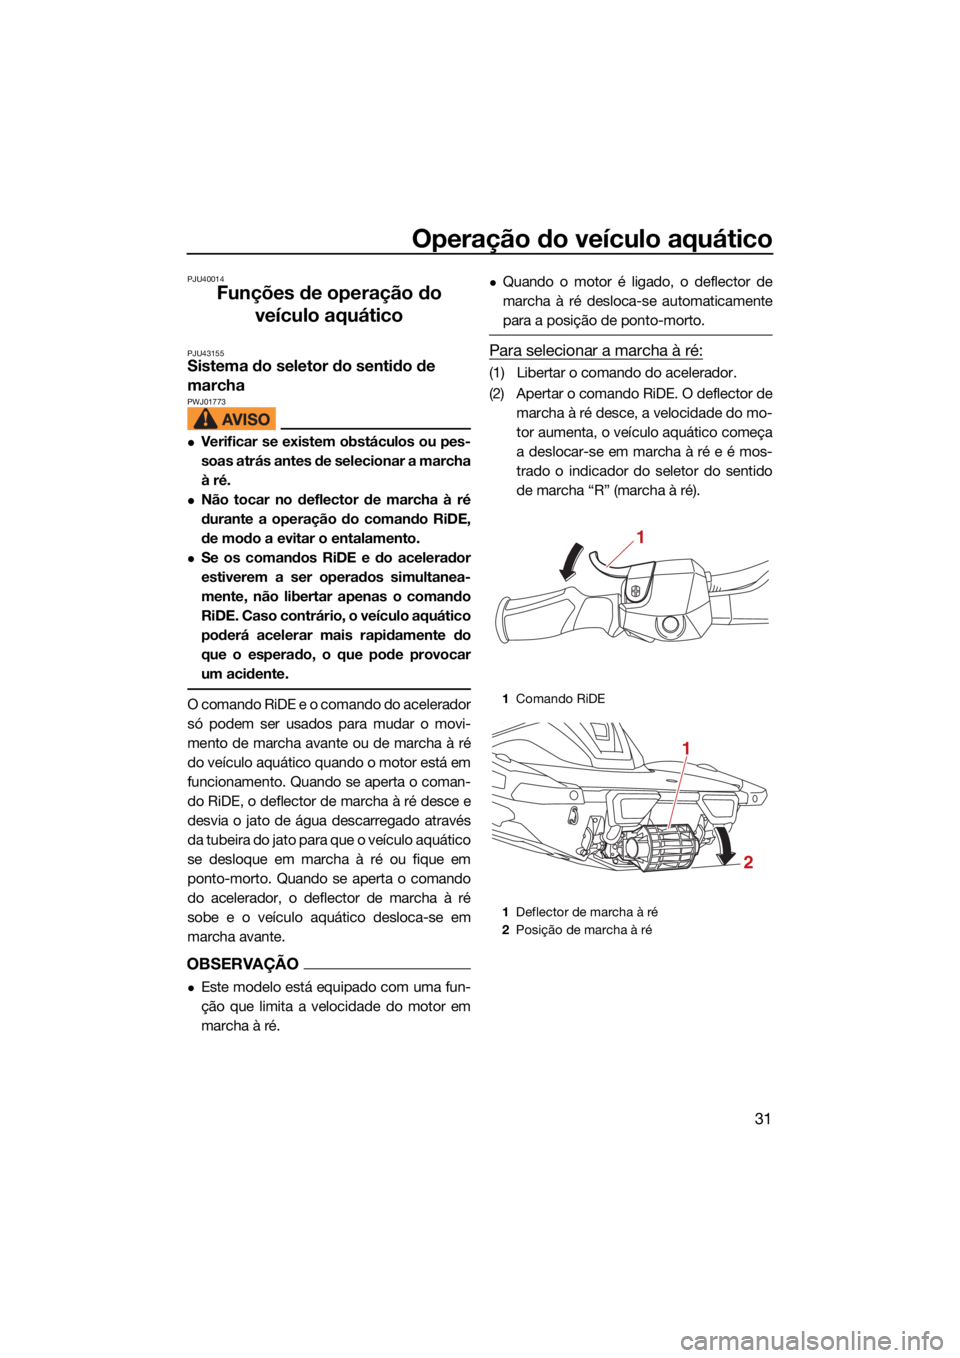 YAMAHA VX LIMITED HO 2022  Manual de utilização (in Portuguese) Operação do veículo aquático
31
PJU40014
Funções de operação do veículo aquático
PJU43155Sistema do seletor do sentido de 
marcha 
PWJ01773
Verificar se existem obstáculos ou pes-
soas a